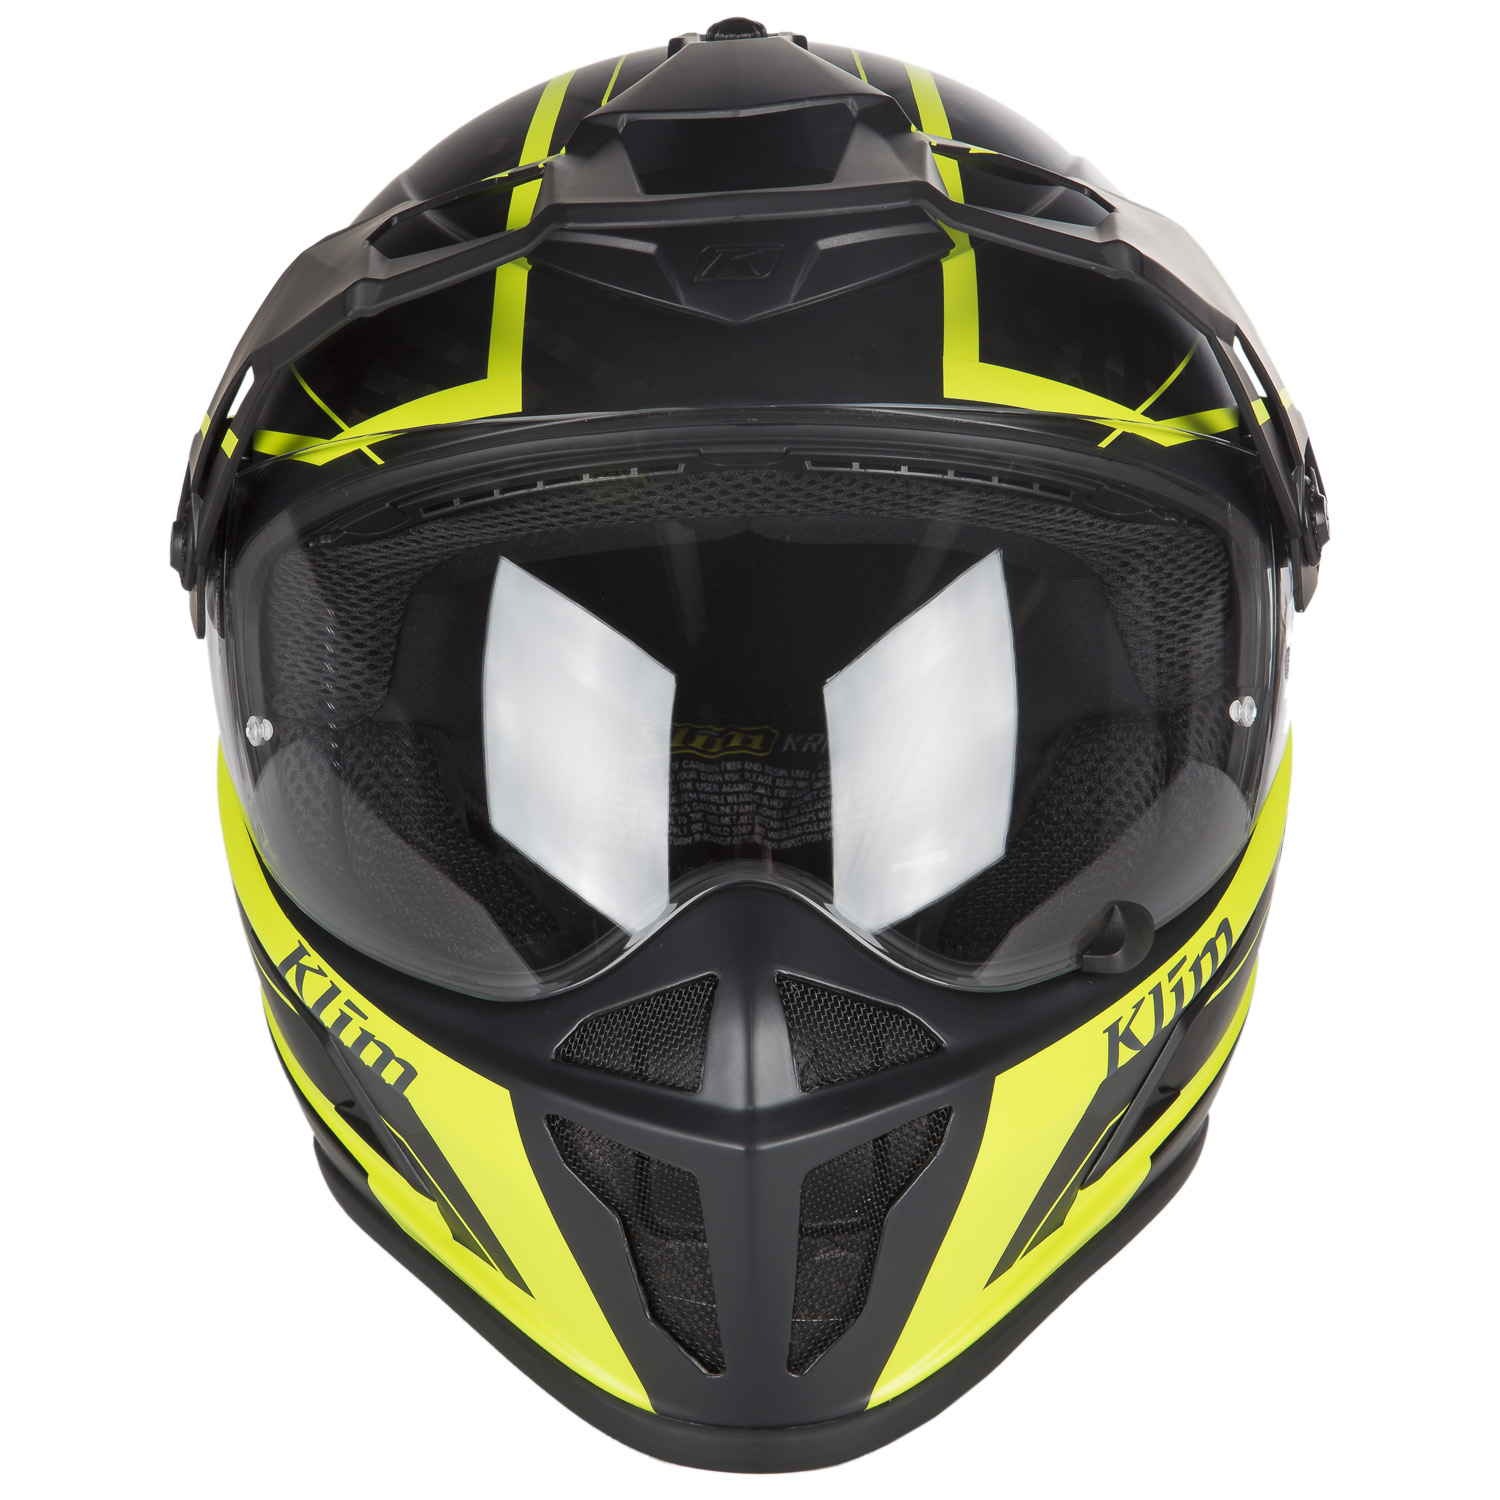 Krios Karbon Adventure Helmet ECE/DOT